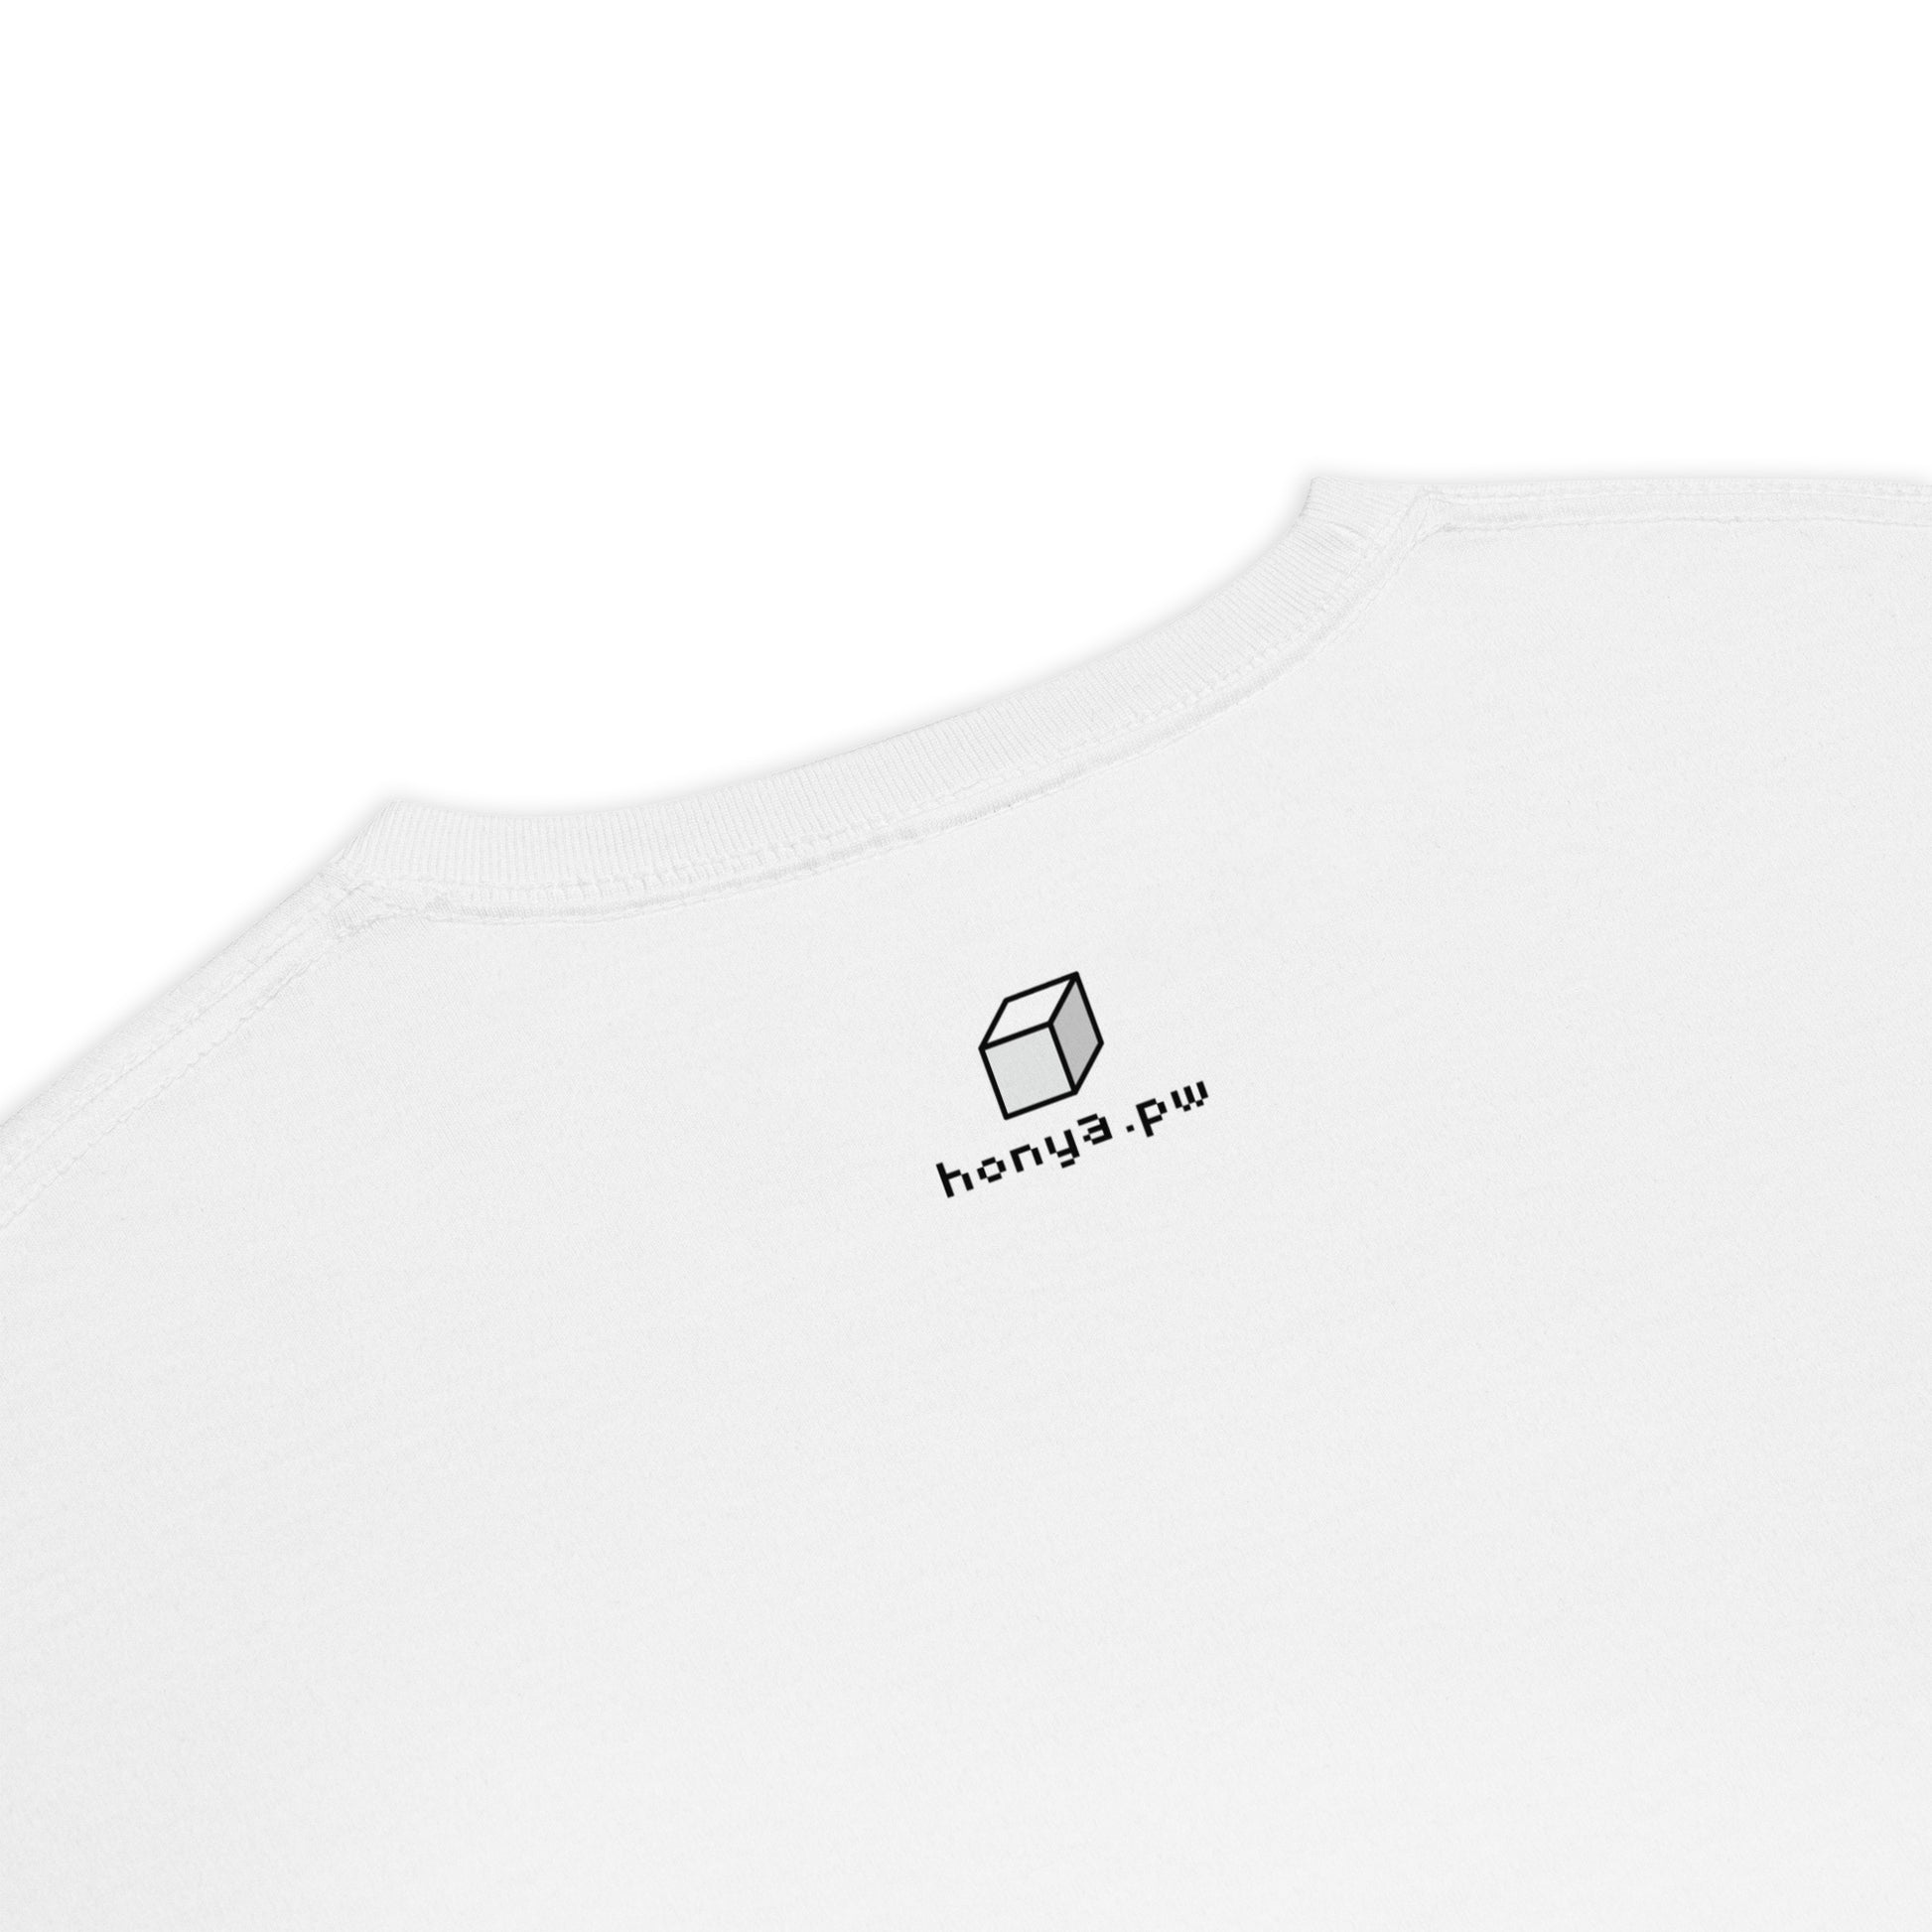 キューブ 黄×青 ビッグシルエットTシャツ [ライトカラー] ホワイト S 01